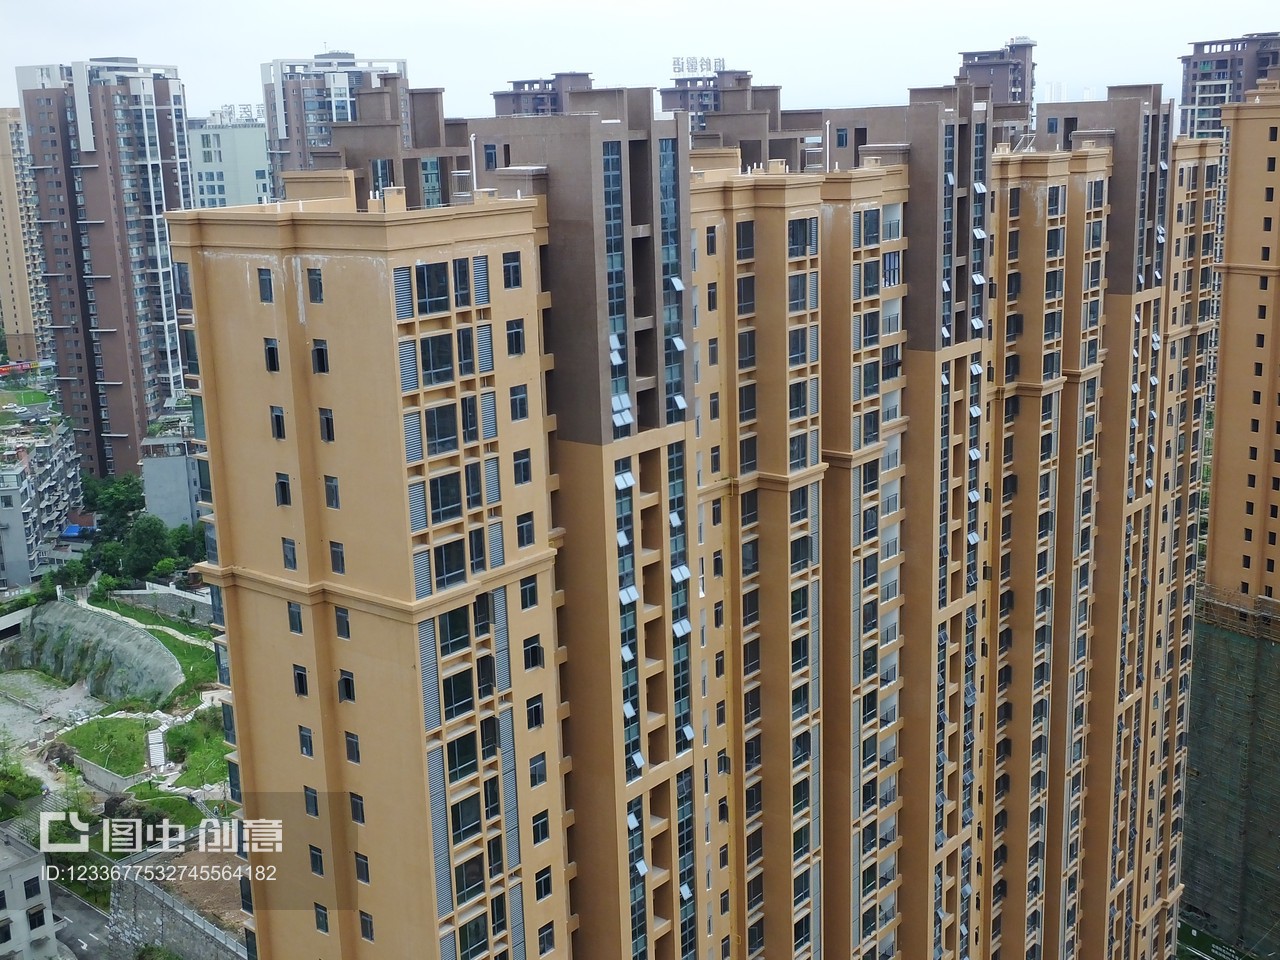 2021年6月17日,湖北宜昌,新建的商品房。新房价格环比上涨